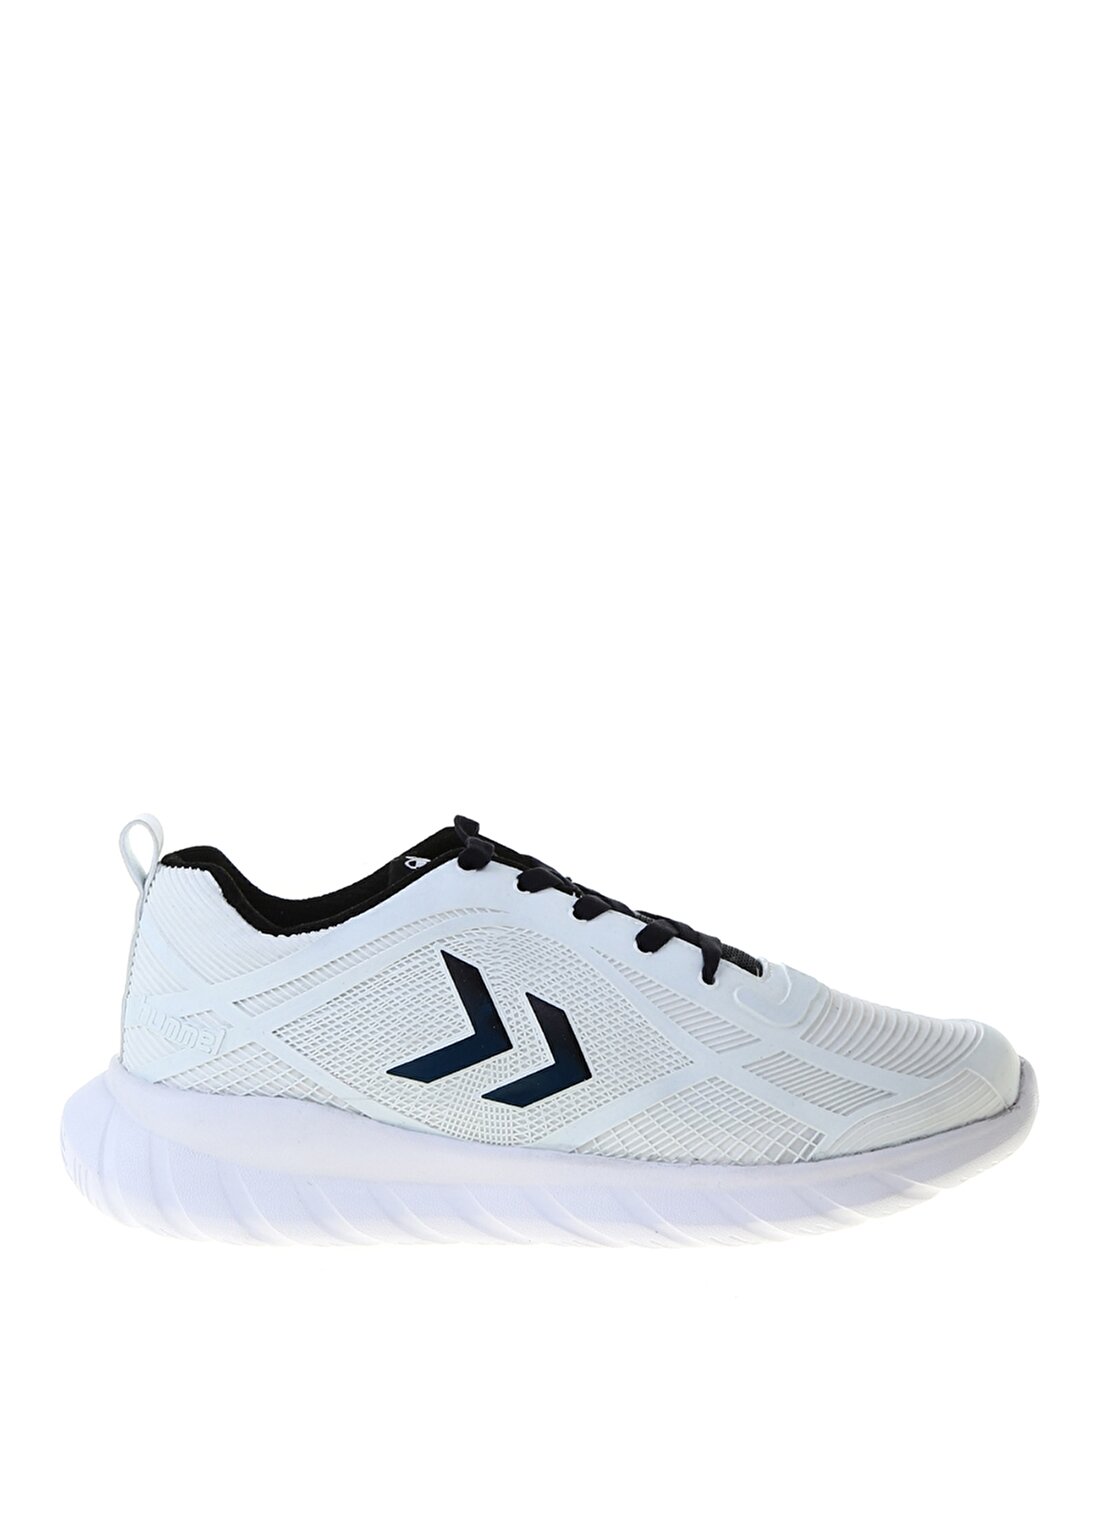 Hummel THUNDER SNEAKER Beyaz - Mavi Kadın Koşu Ayakkabısı 212009-9368